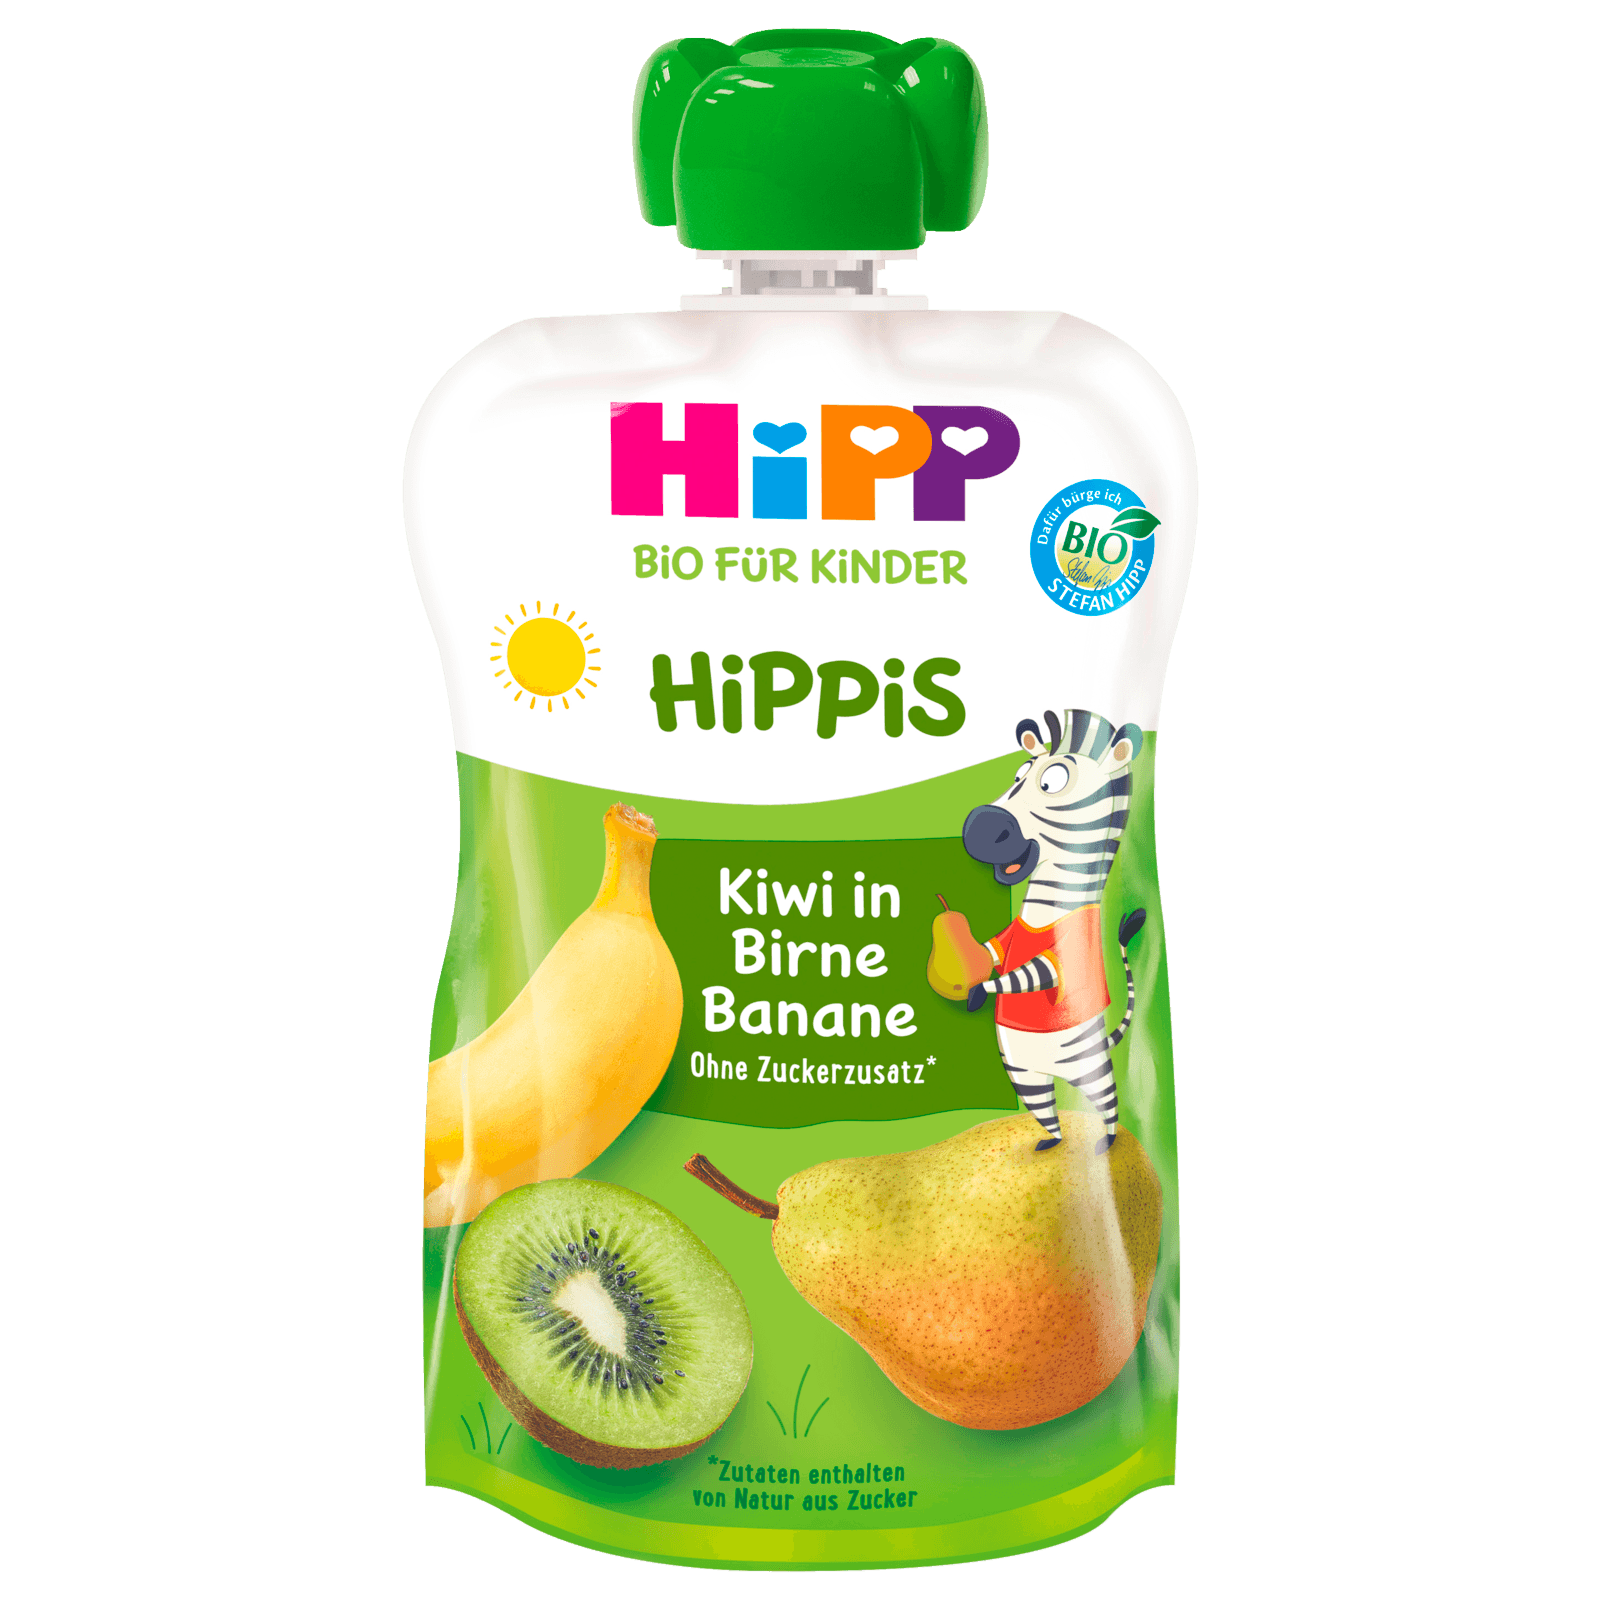 Hipp Hippis Charlie Zebra Bio Kiwi in Birne-Banane 100g